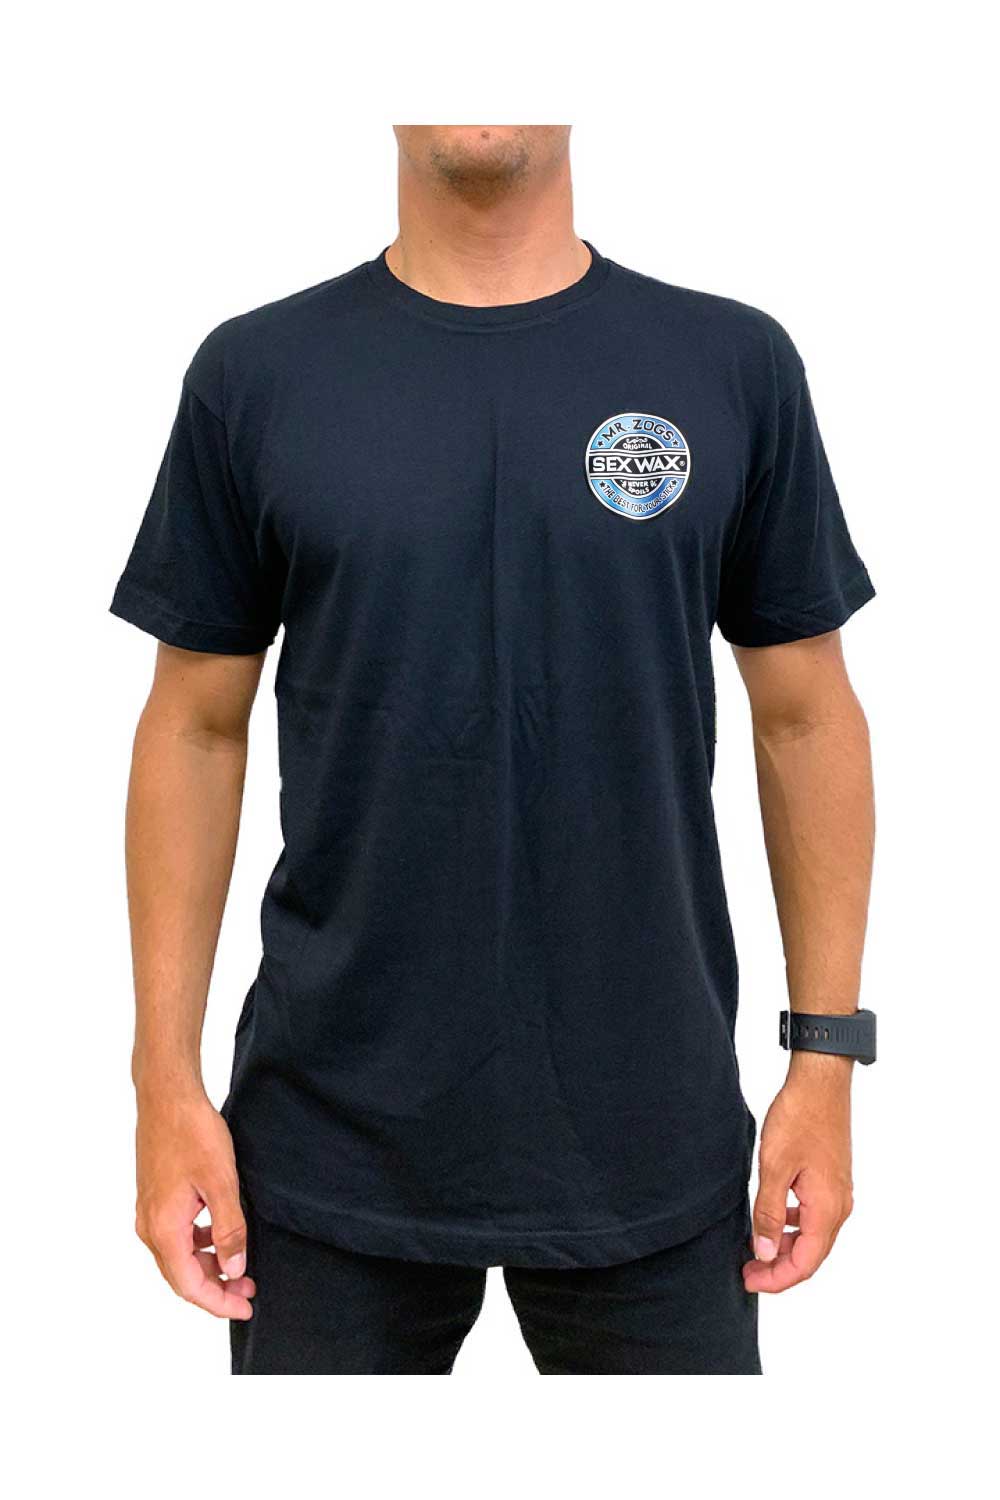 Sex Wax Men's T-Shirt Faded Blue Blend Logo